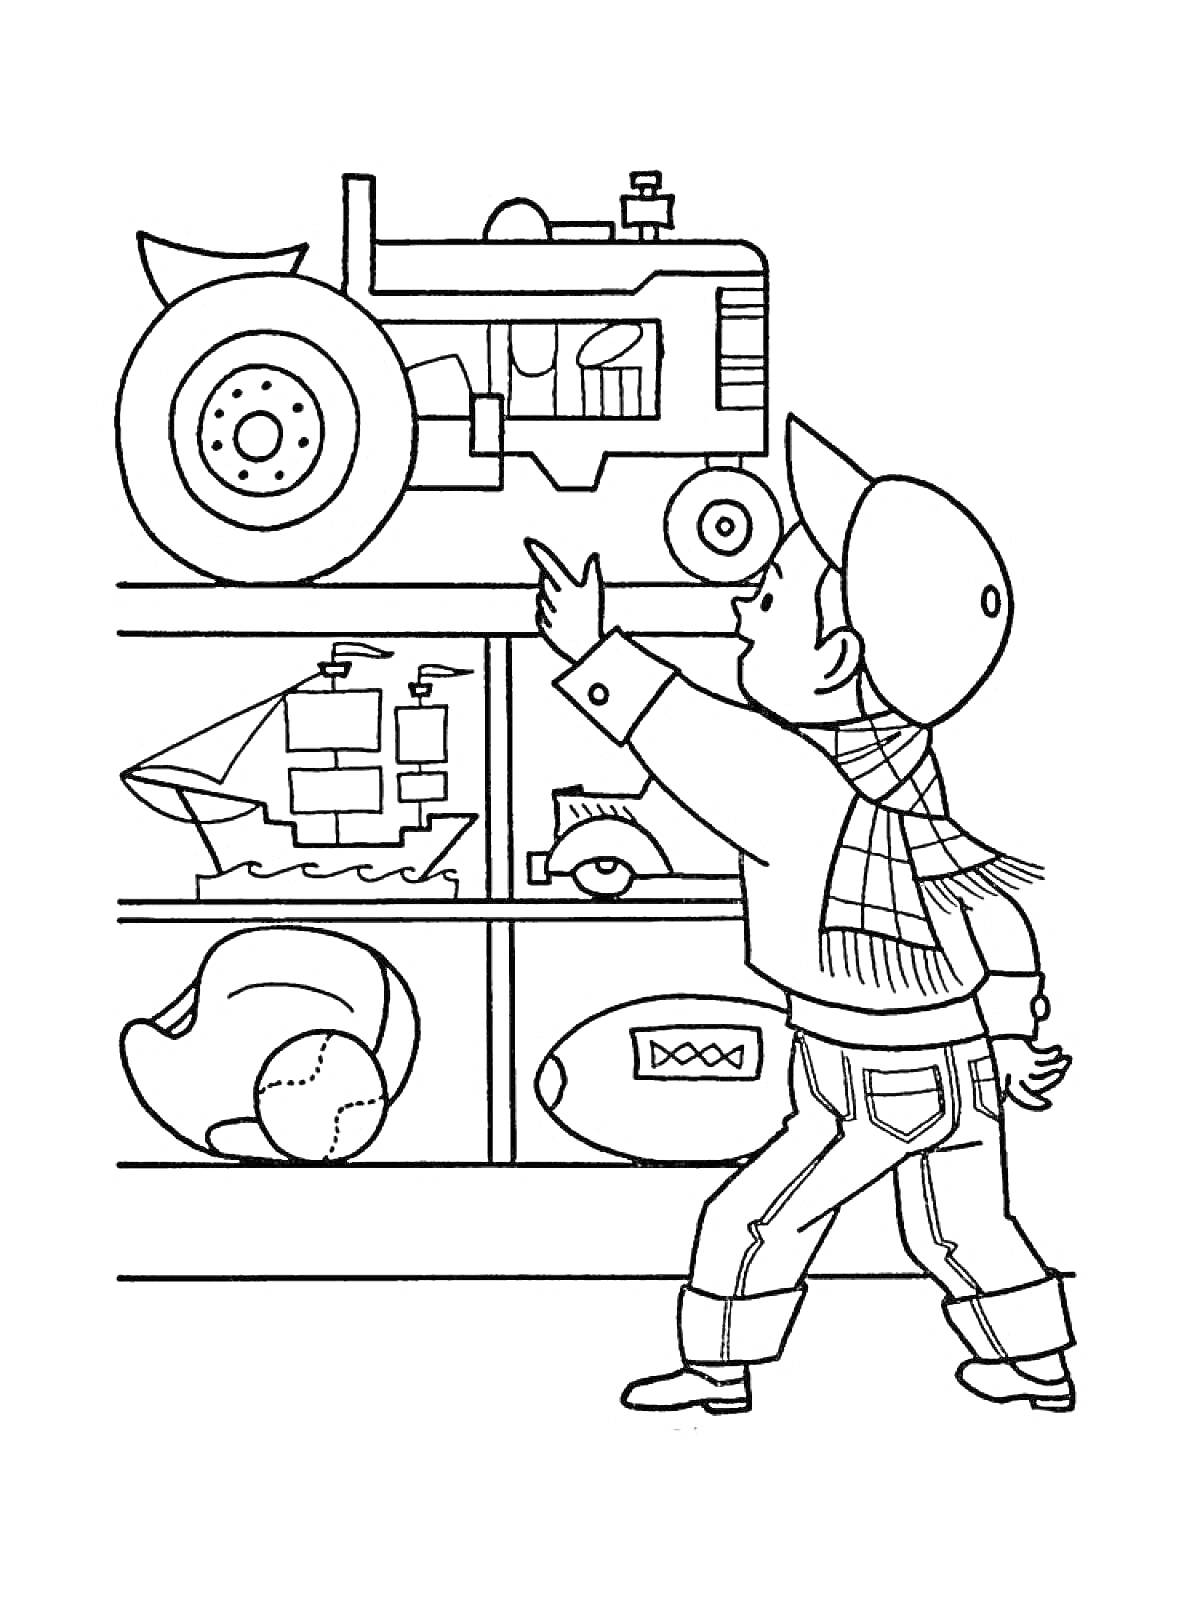 Мальчик в магазине игрушек указывает на трактор на полке, рядом расположены игрушечный парусник, мяч и лодка.